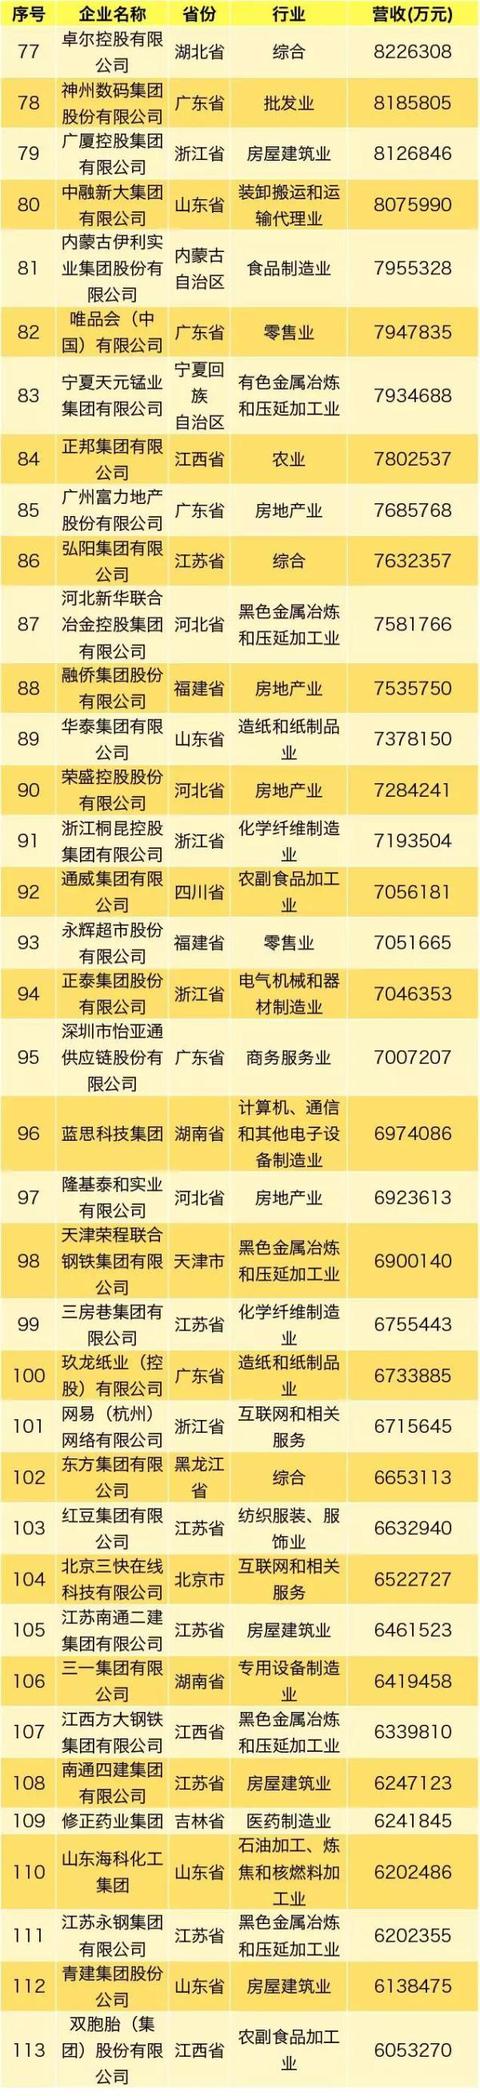 2019中国民营企业500强完整榜单发布 华为蝉联冠军